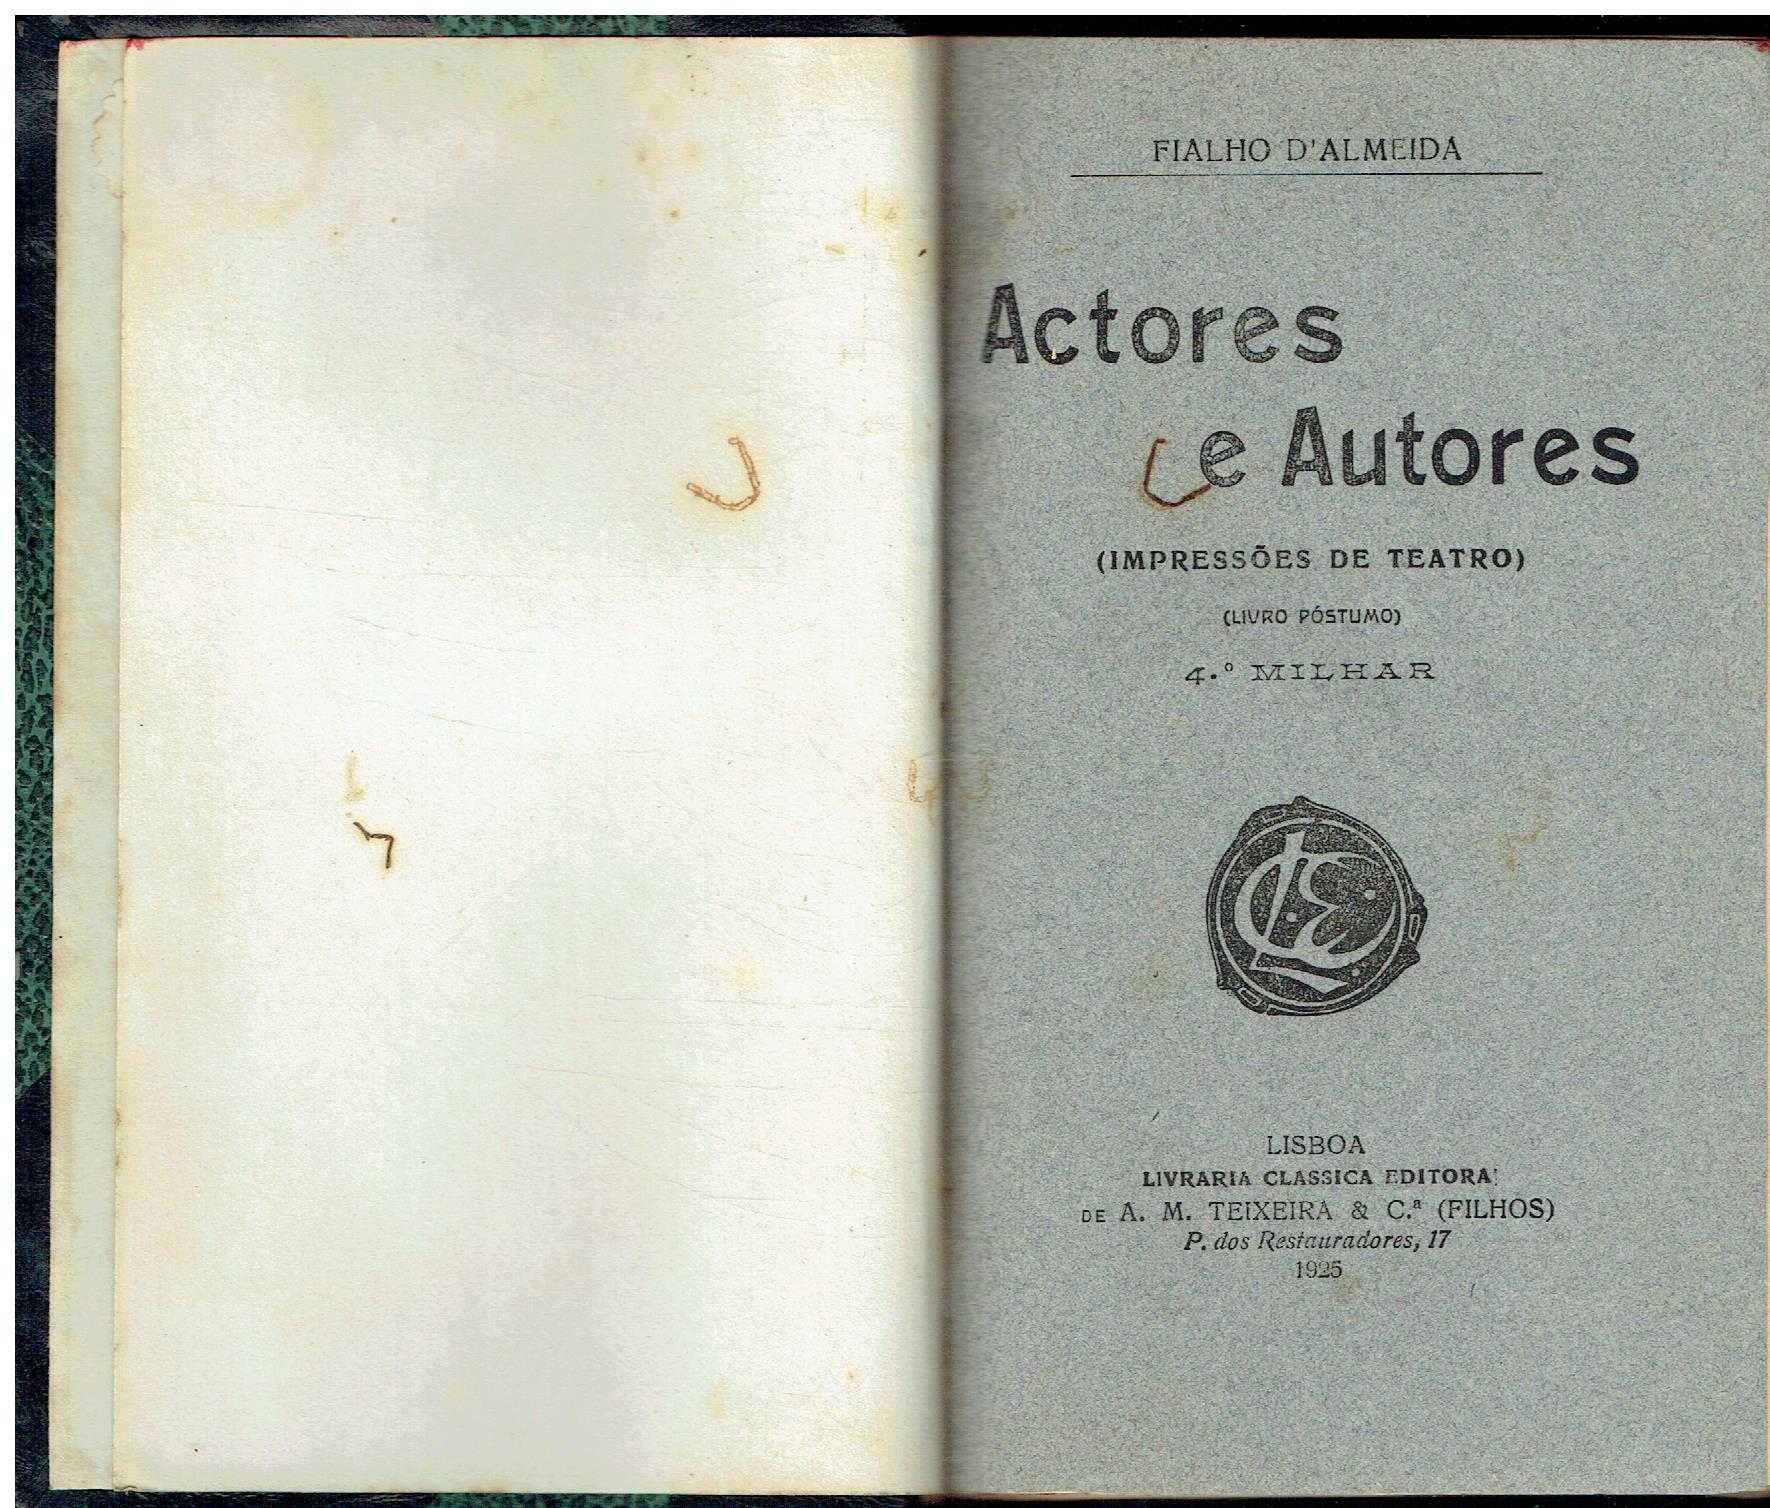 0336
	
Actores e autores : impressões de teatro 
de Fialho d'Almeida.